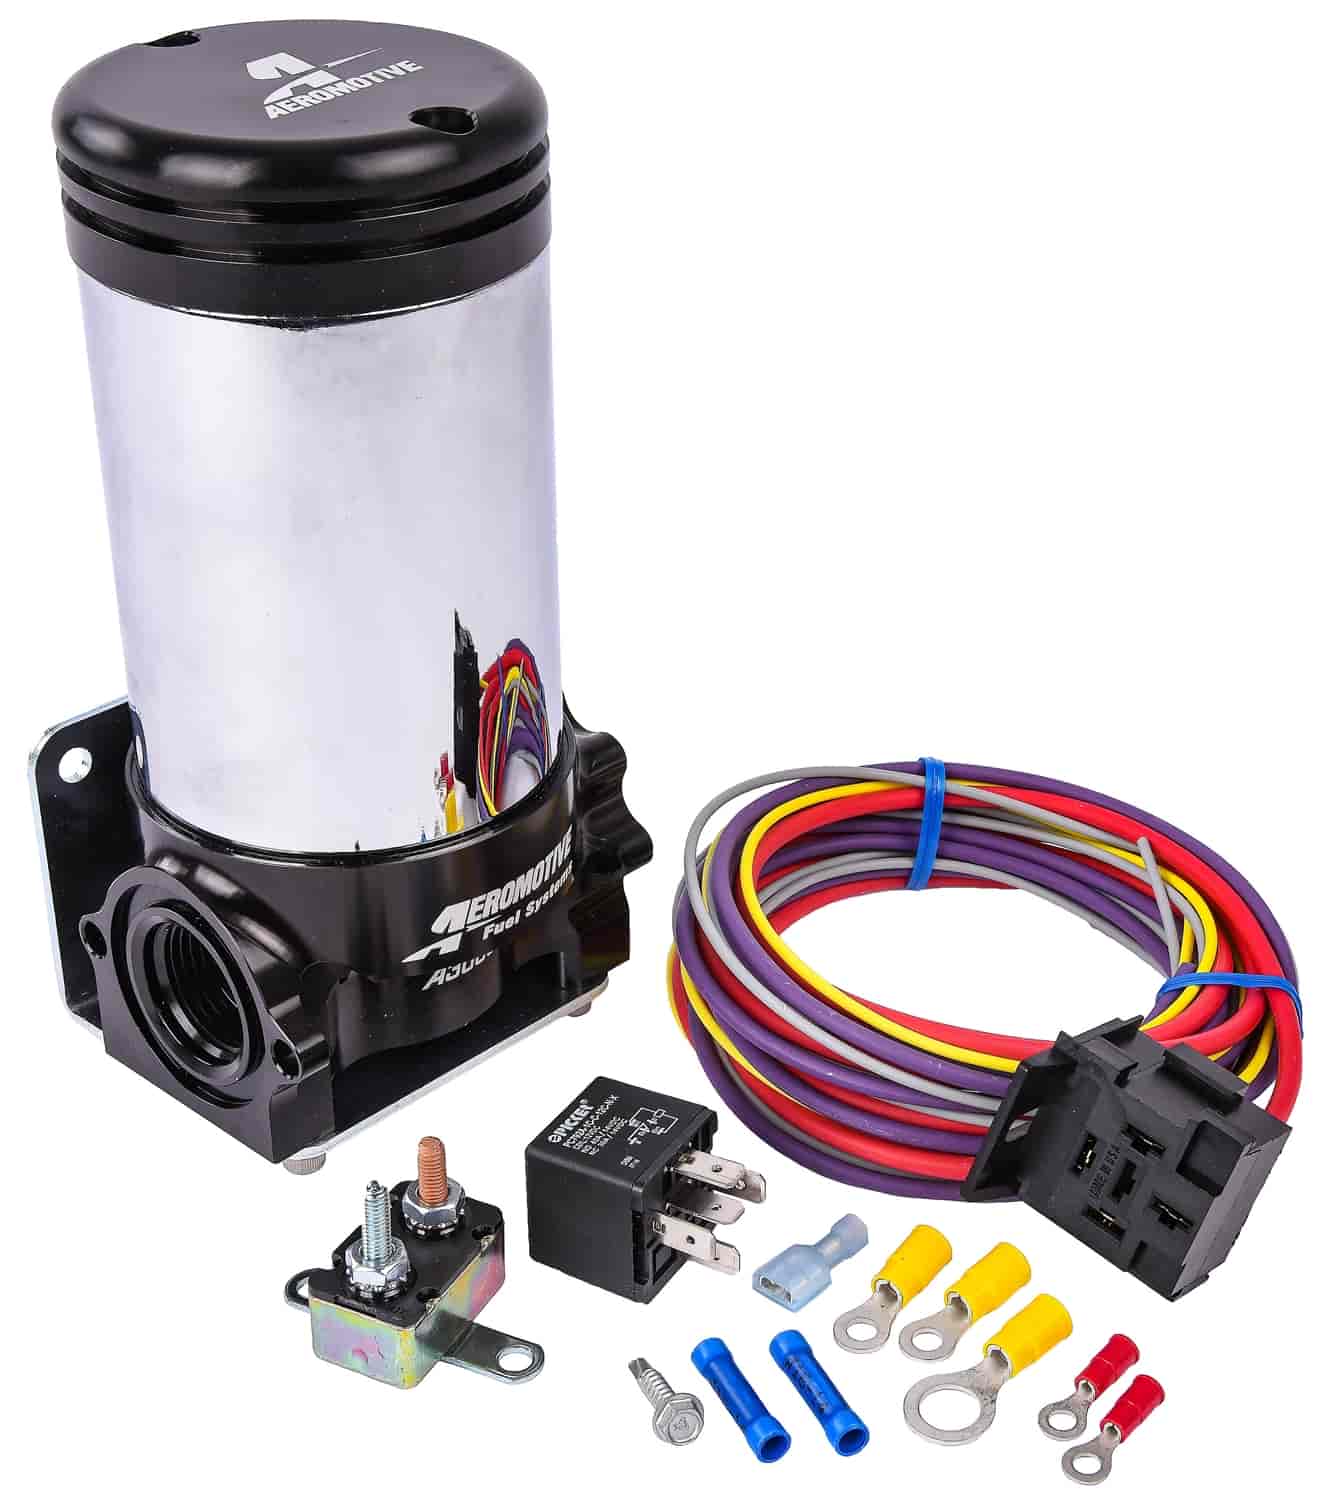 A3000 Fuel Pump Kit Includes: Aeromotive A3000 Fuel Pump Kit